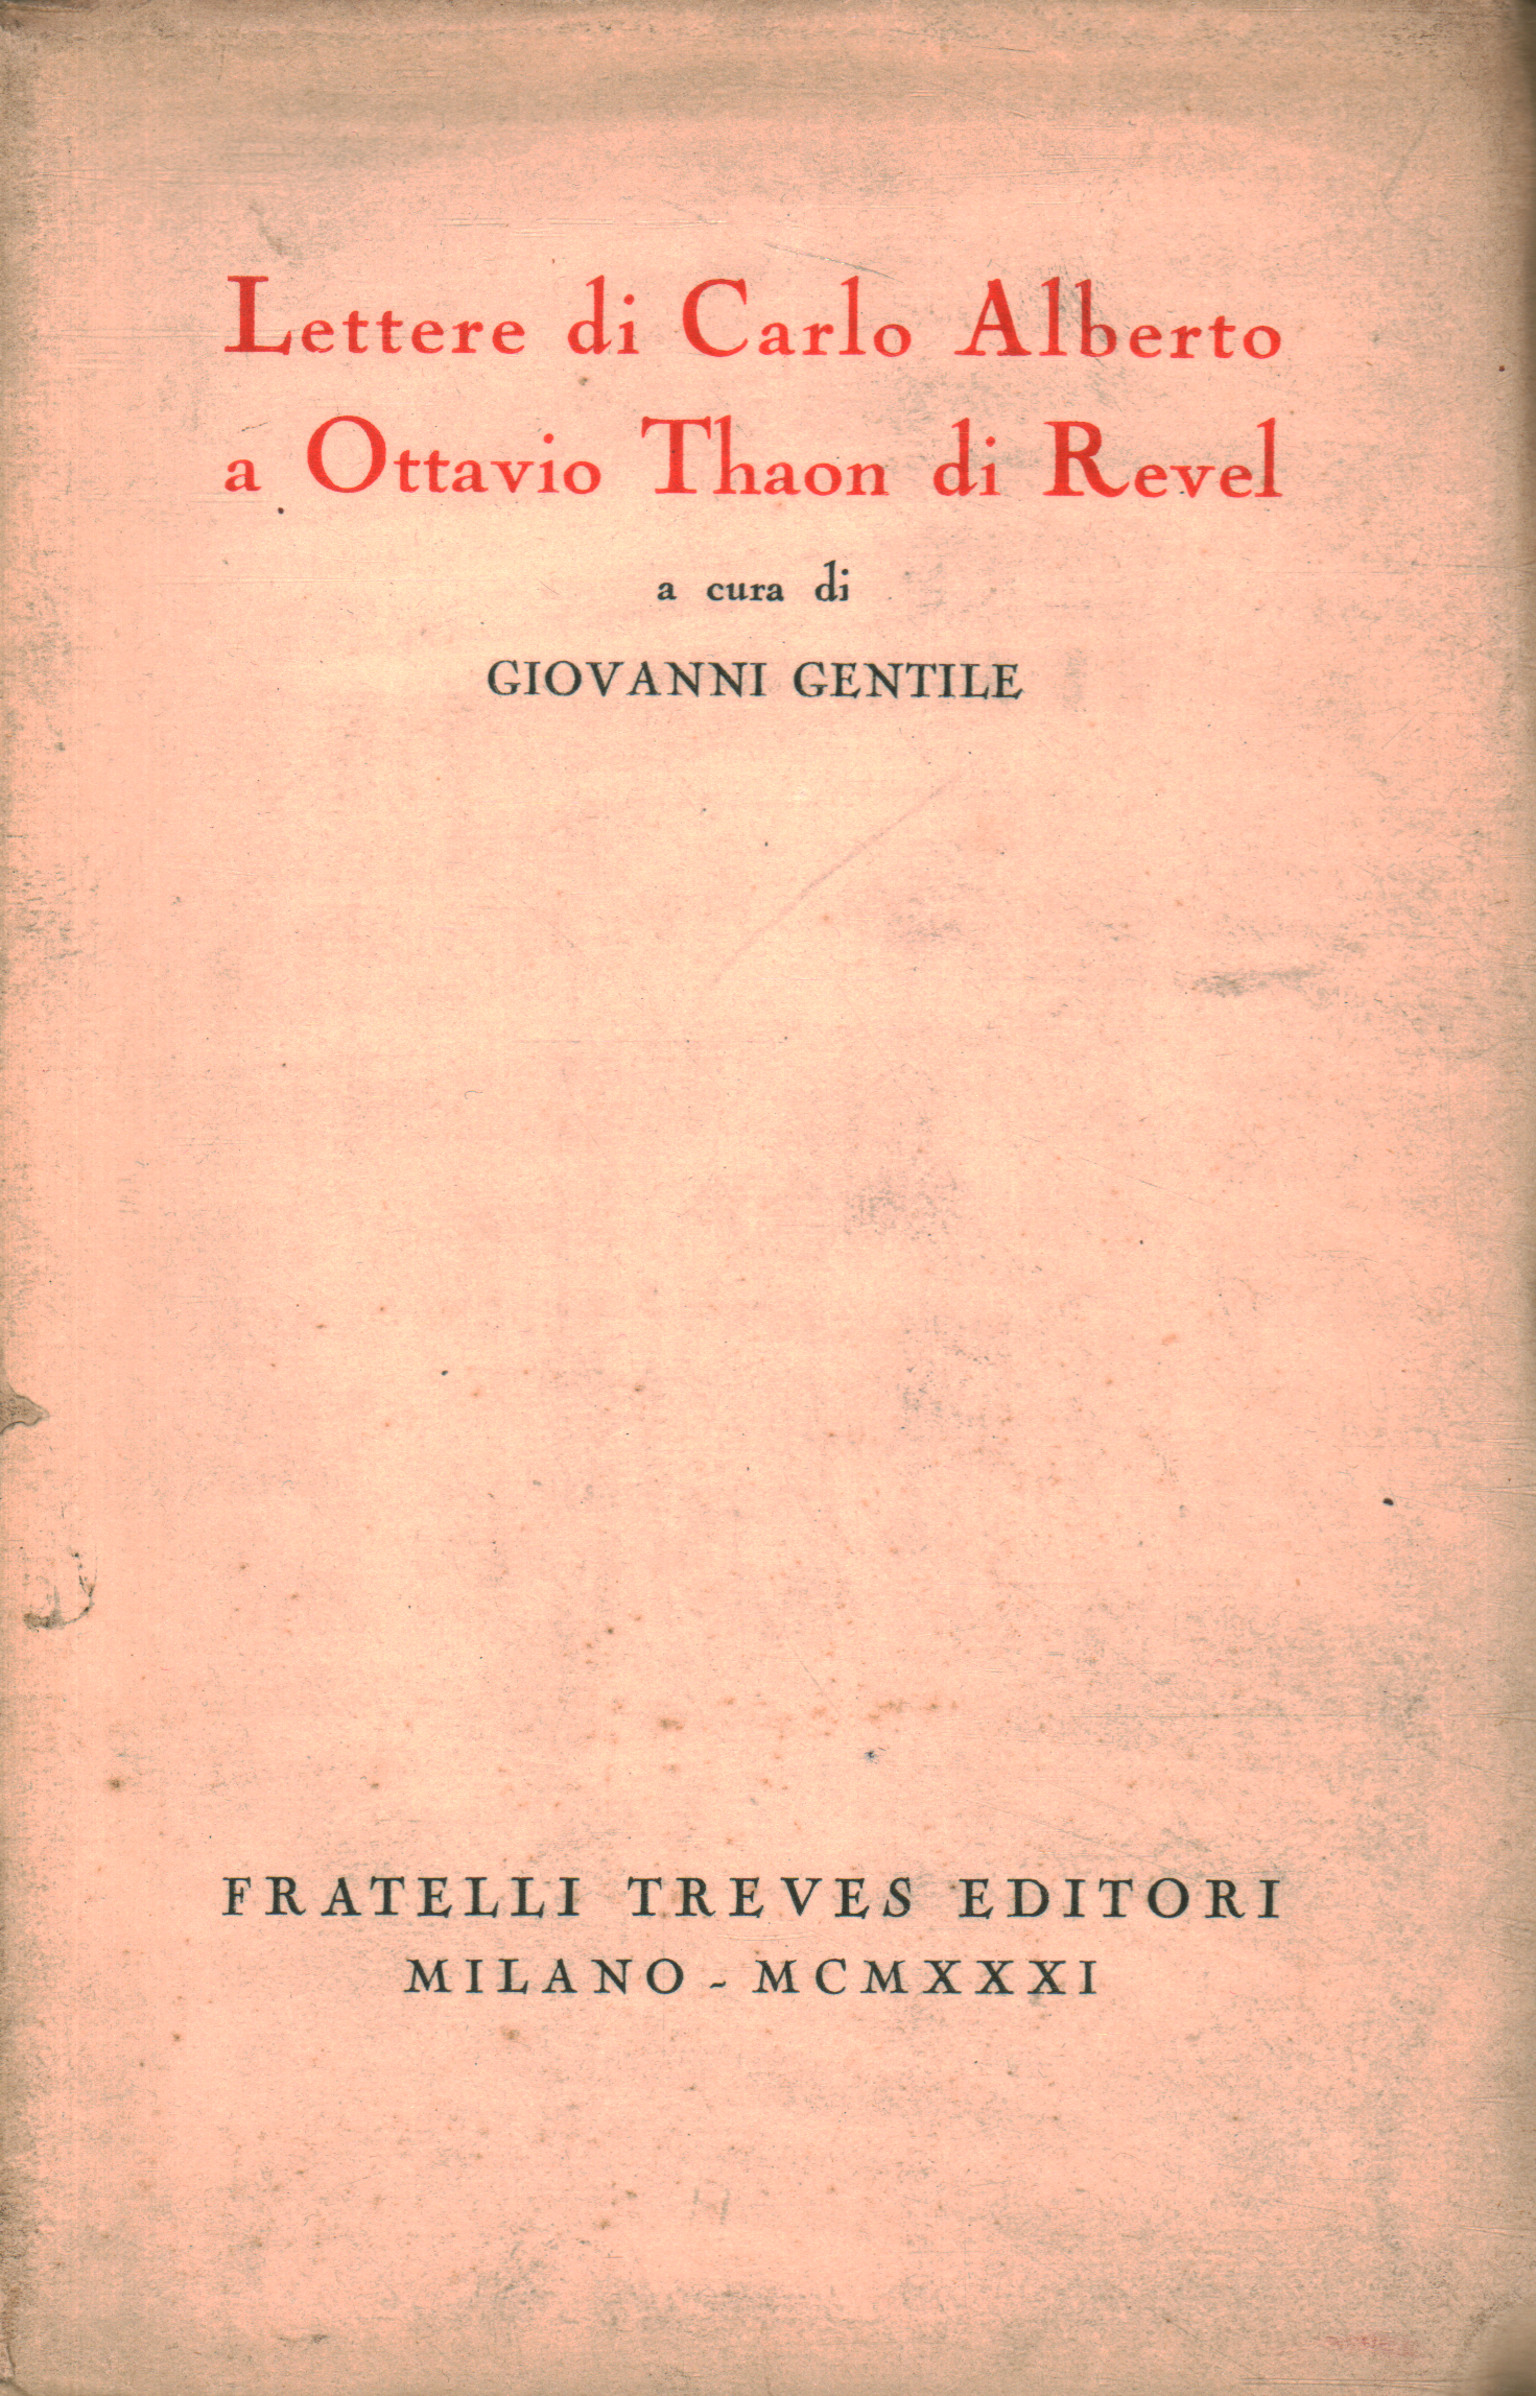 Letters from Carlo Alberto to Ottavio Tha